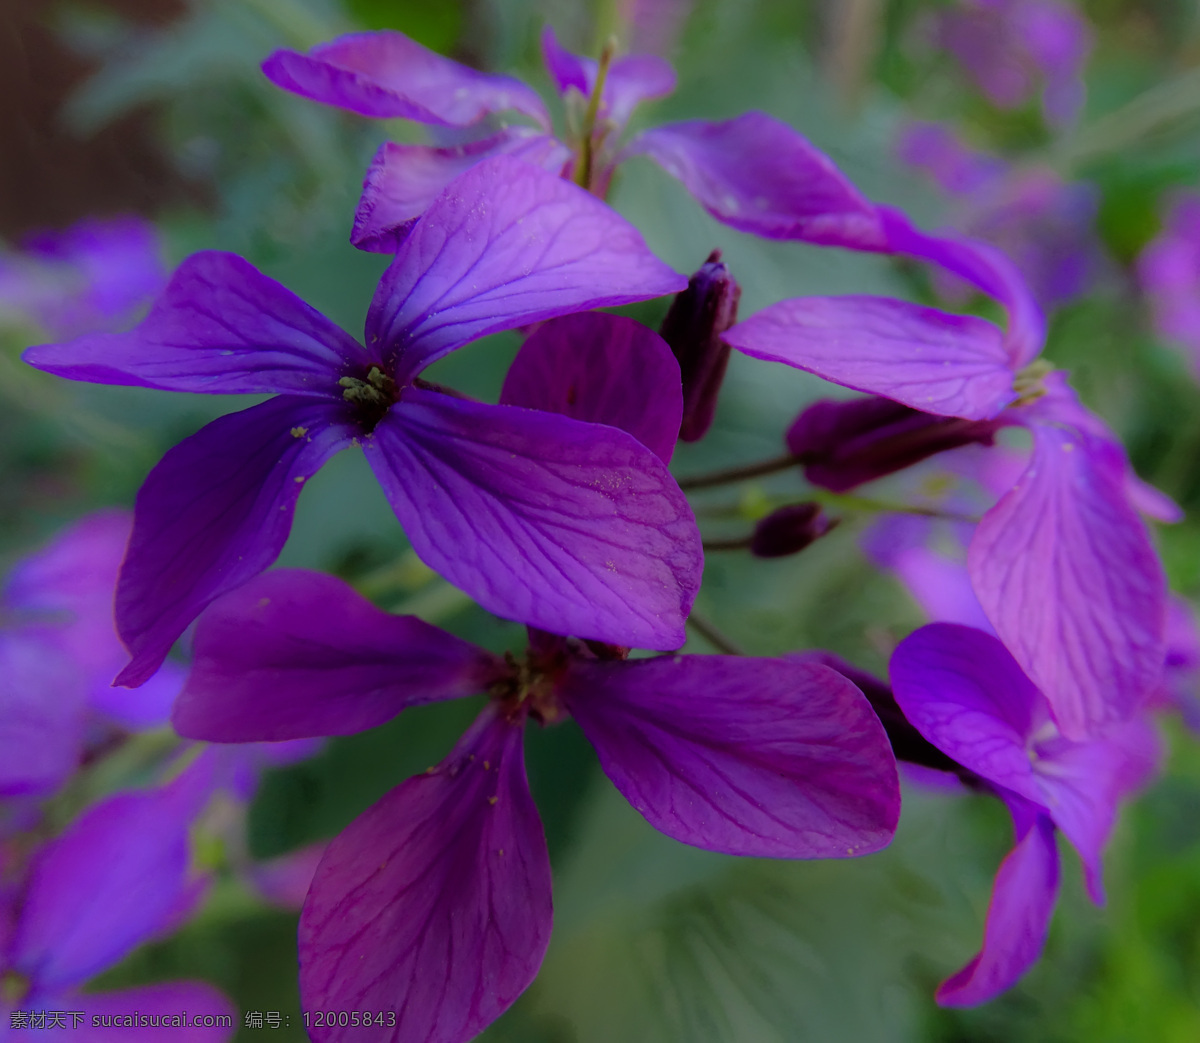 春天的花朵 花 紫色 紫色花 植物 自然 花园里的花 唯美图片 唯美壁纸 壁纸图片 桌面壁纸 壁纸 背景素材 手机壁纸 创意 生物世界 花草